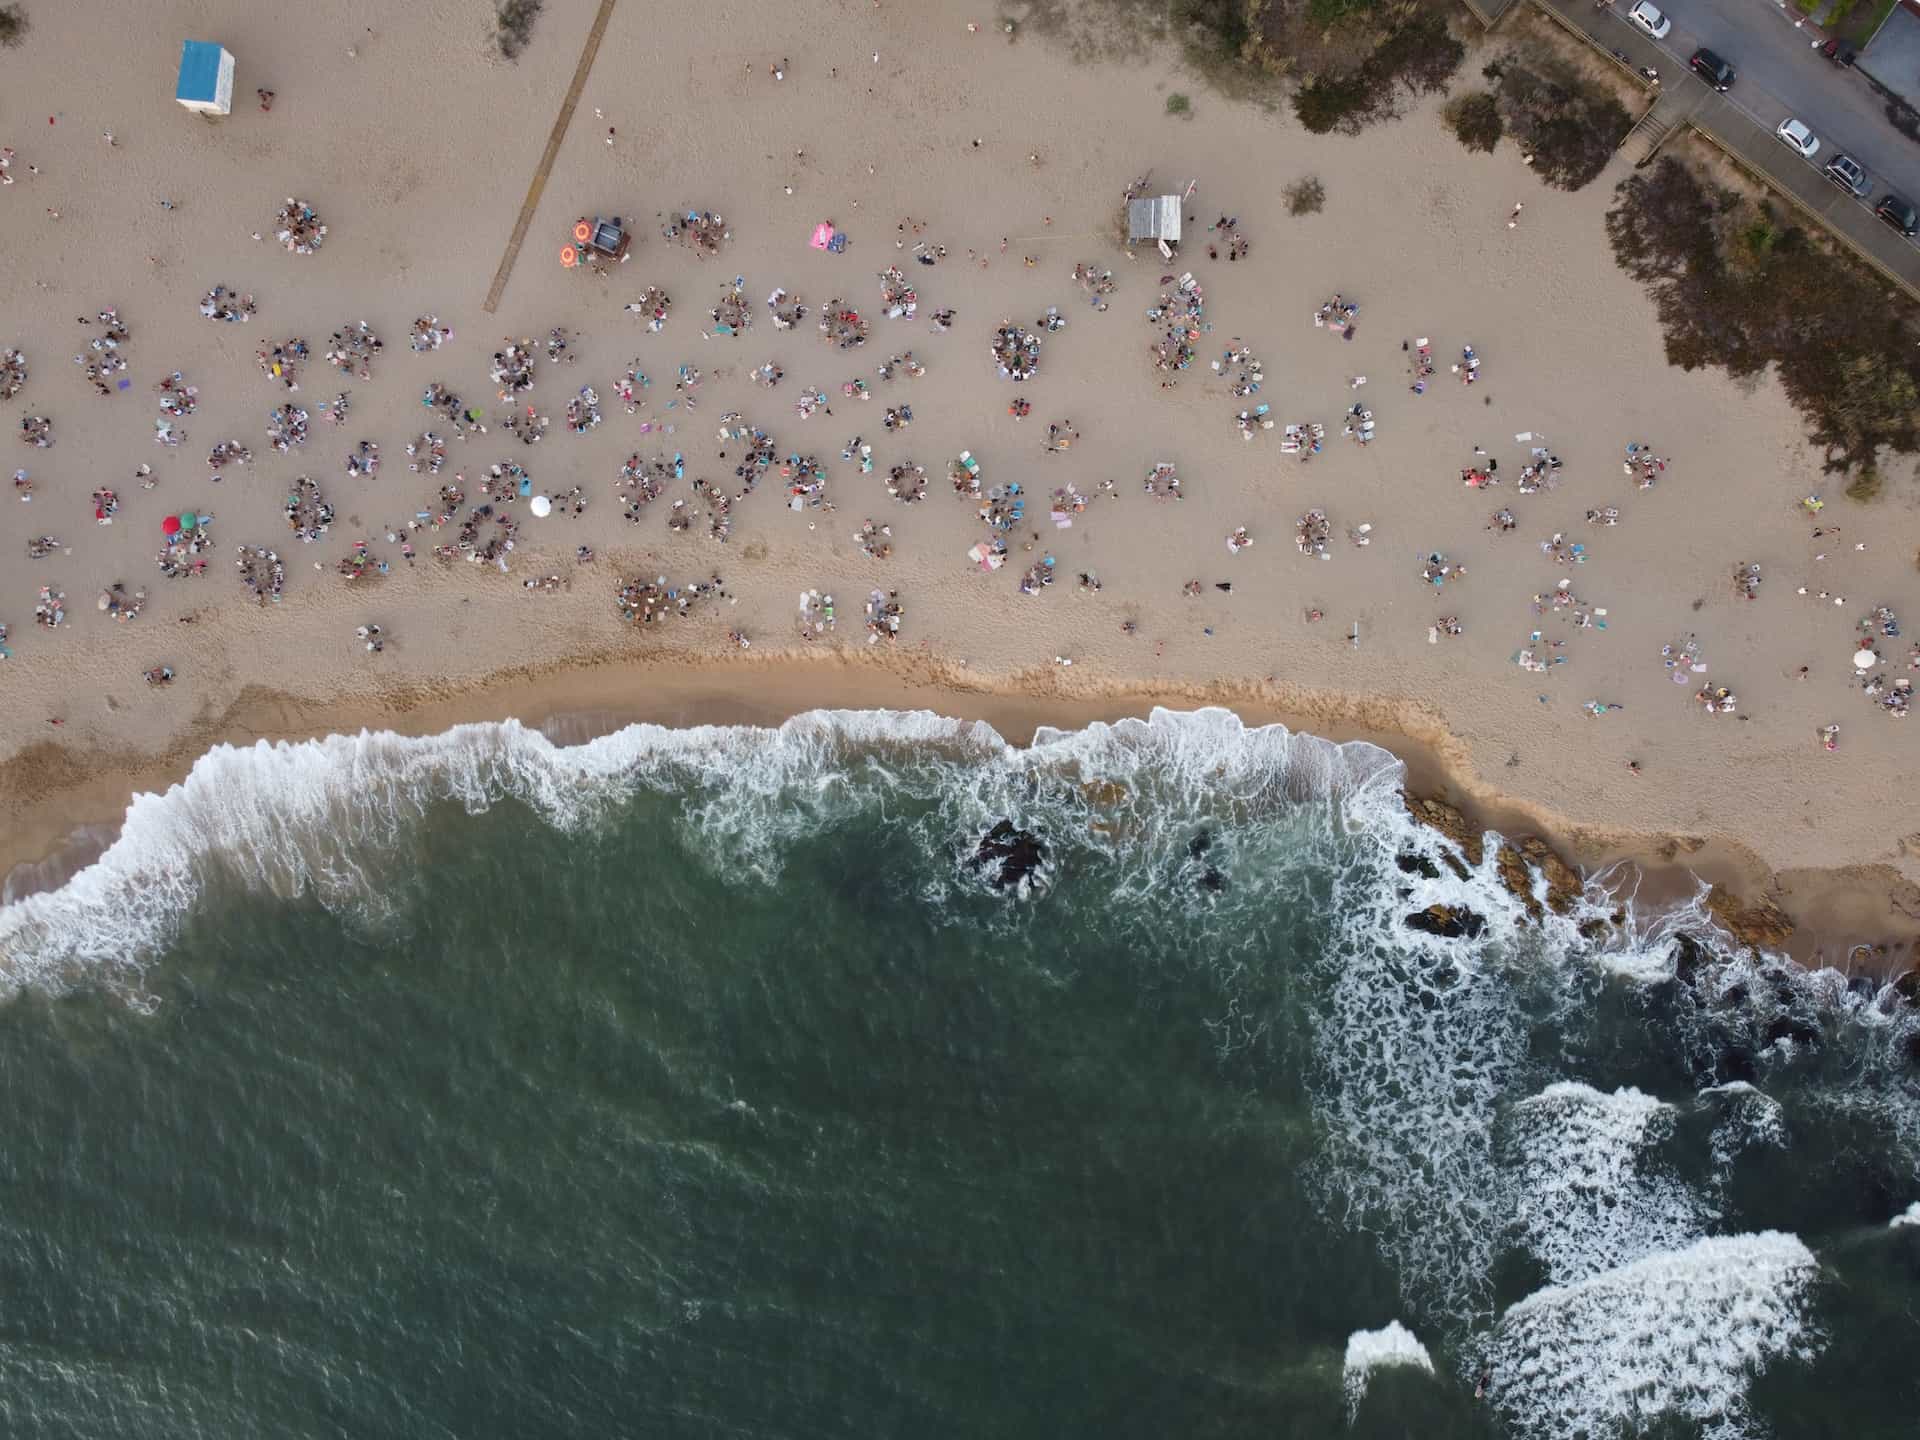 People on the beach at Punta del Este, Uruguay.